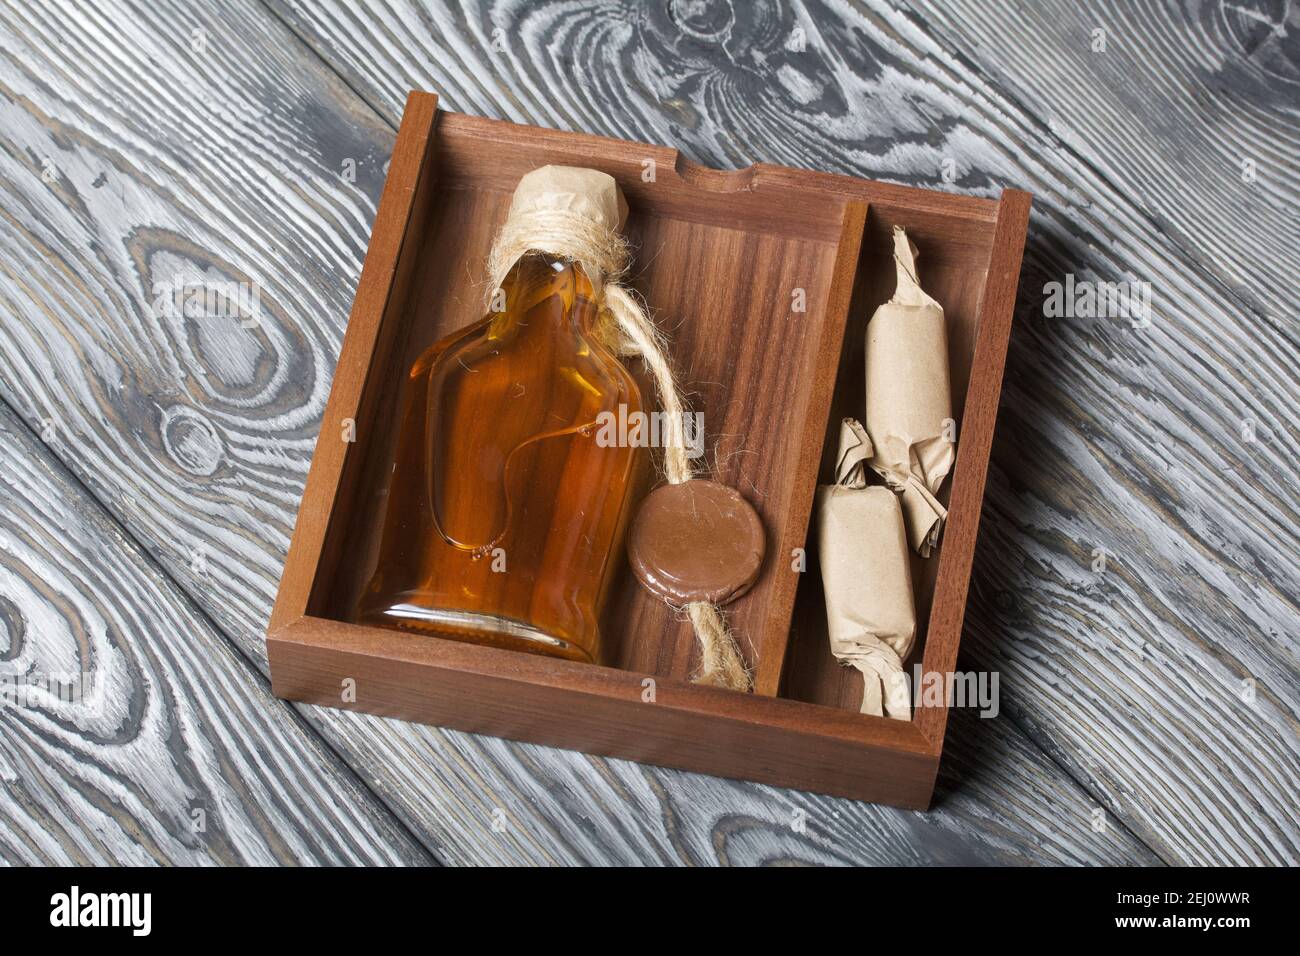 Geschenk Alkohol. Eine Flasche Alkohol und Süßigkeiten befinden sich in  einer Holzkiste Stockfotografie - Alamy